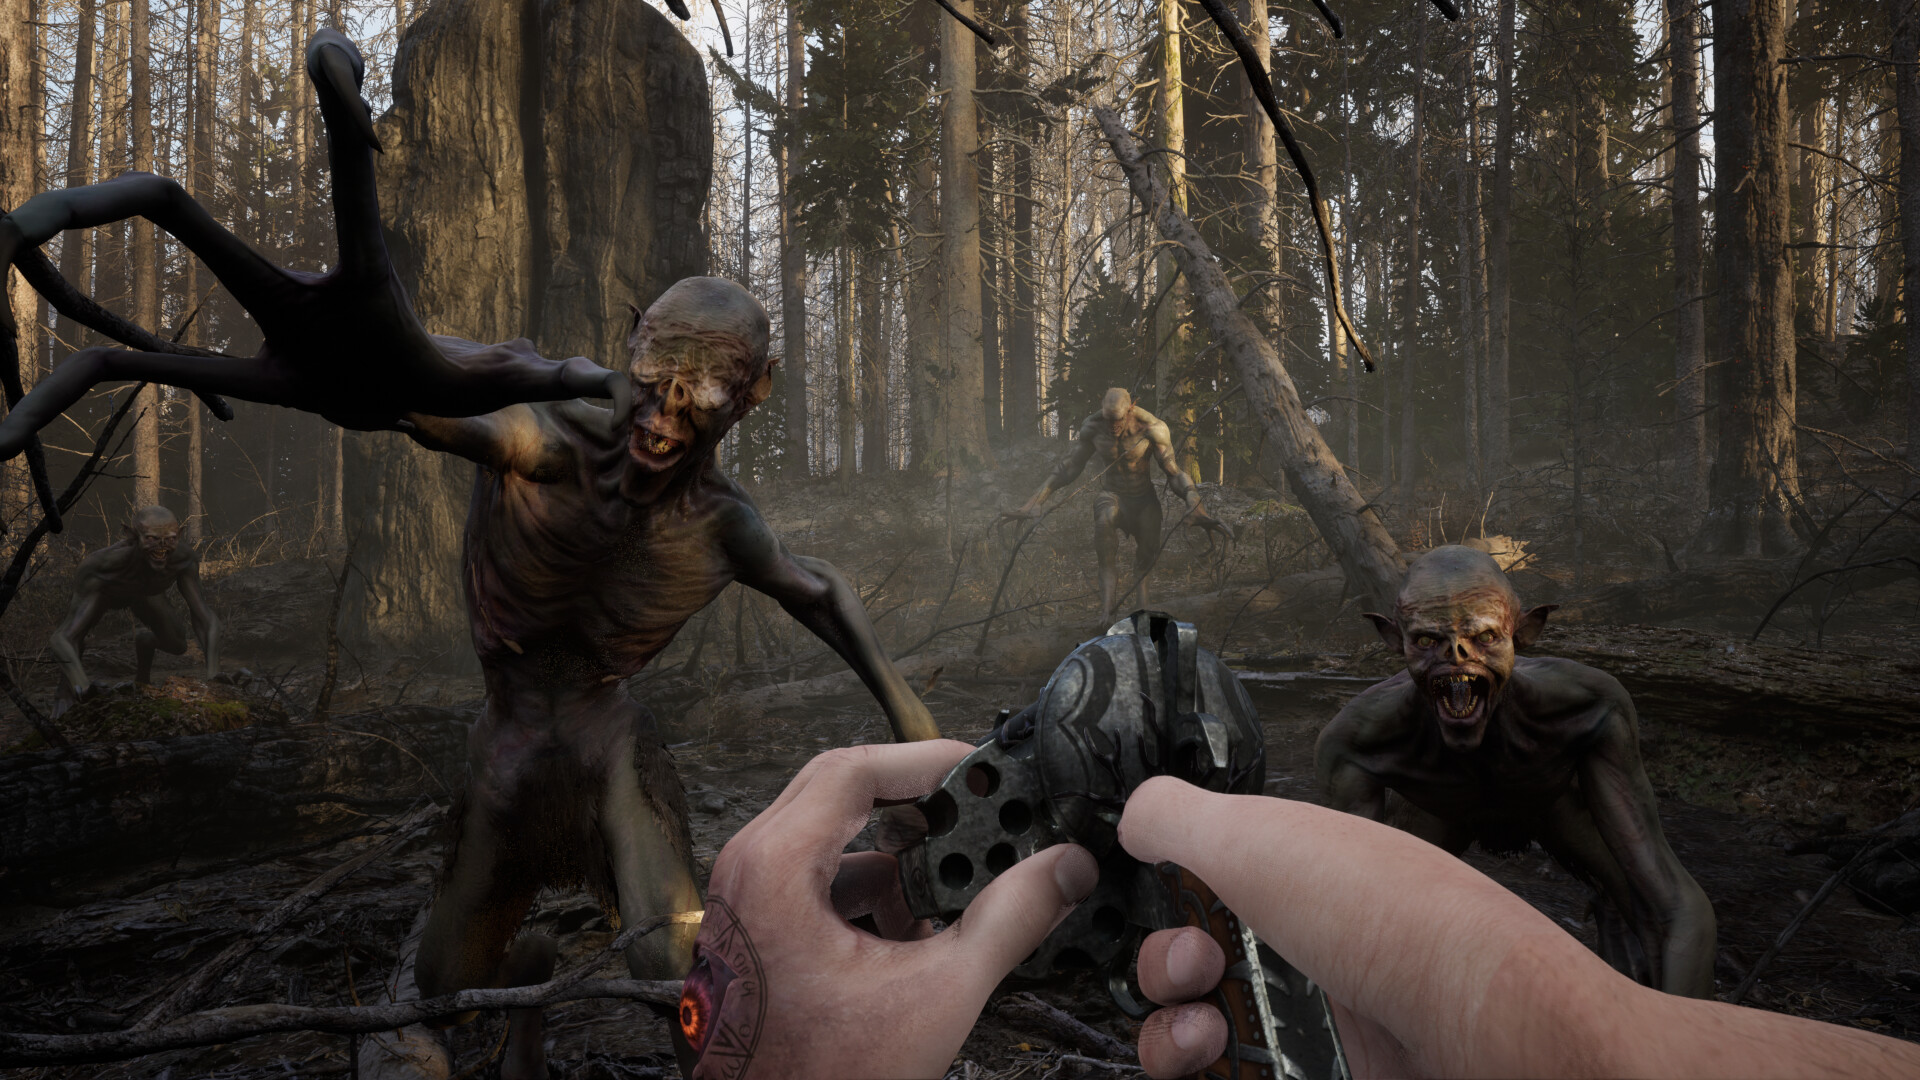  5 x turnos de noticias £625.00 FALSO FALSO FALSO FALSO: El jugador carga una revolución mientras dos criaturas duendes corren hacia ellos en un área de bosque espeluznante.